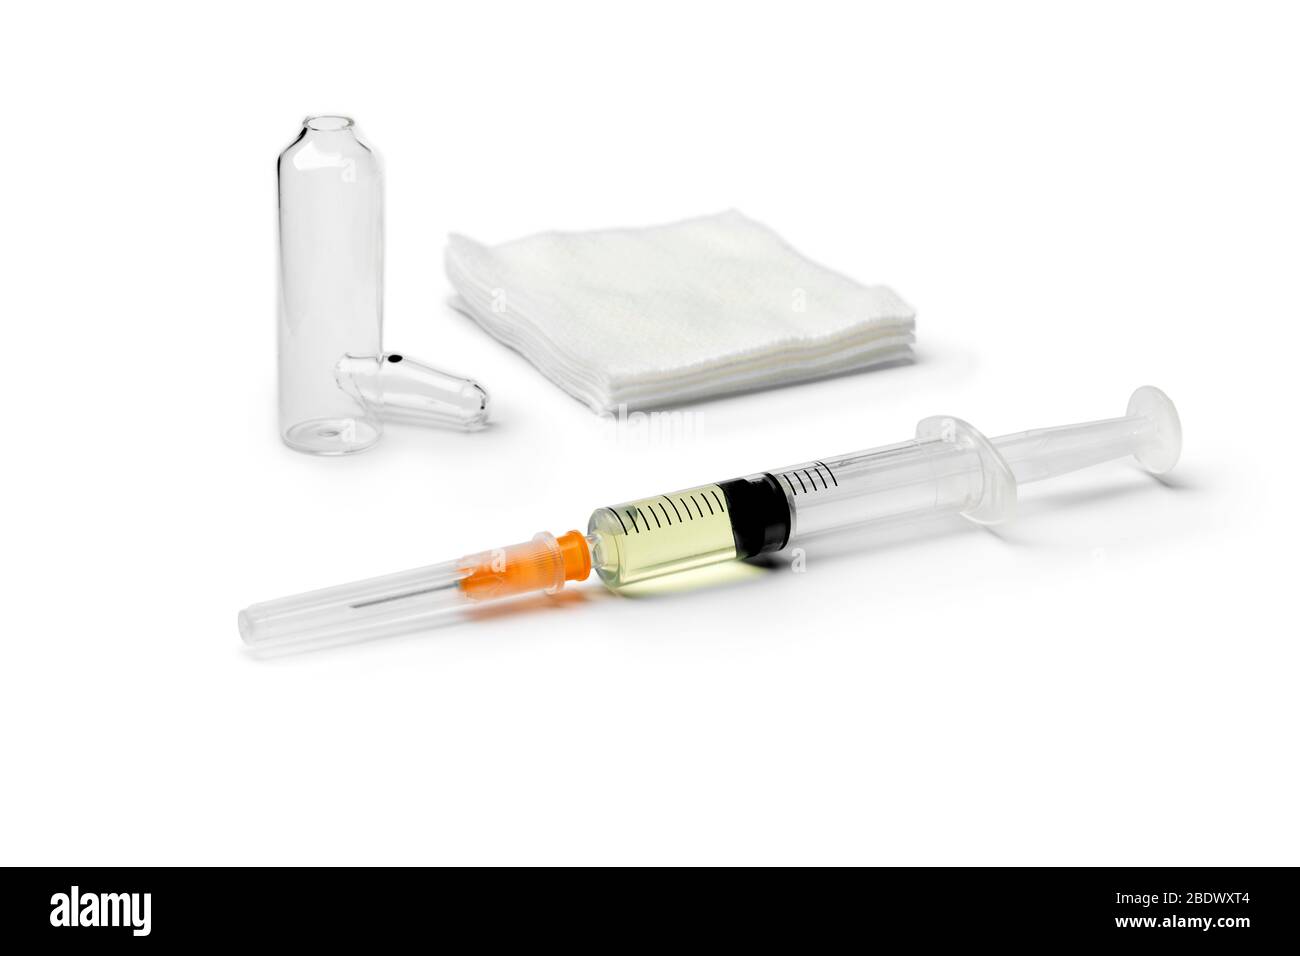 Medical drug ampule and syringe awaiting injection isolated on white background Stock Photo